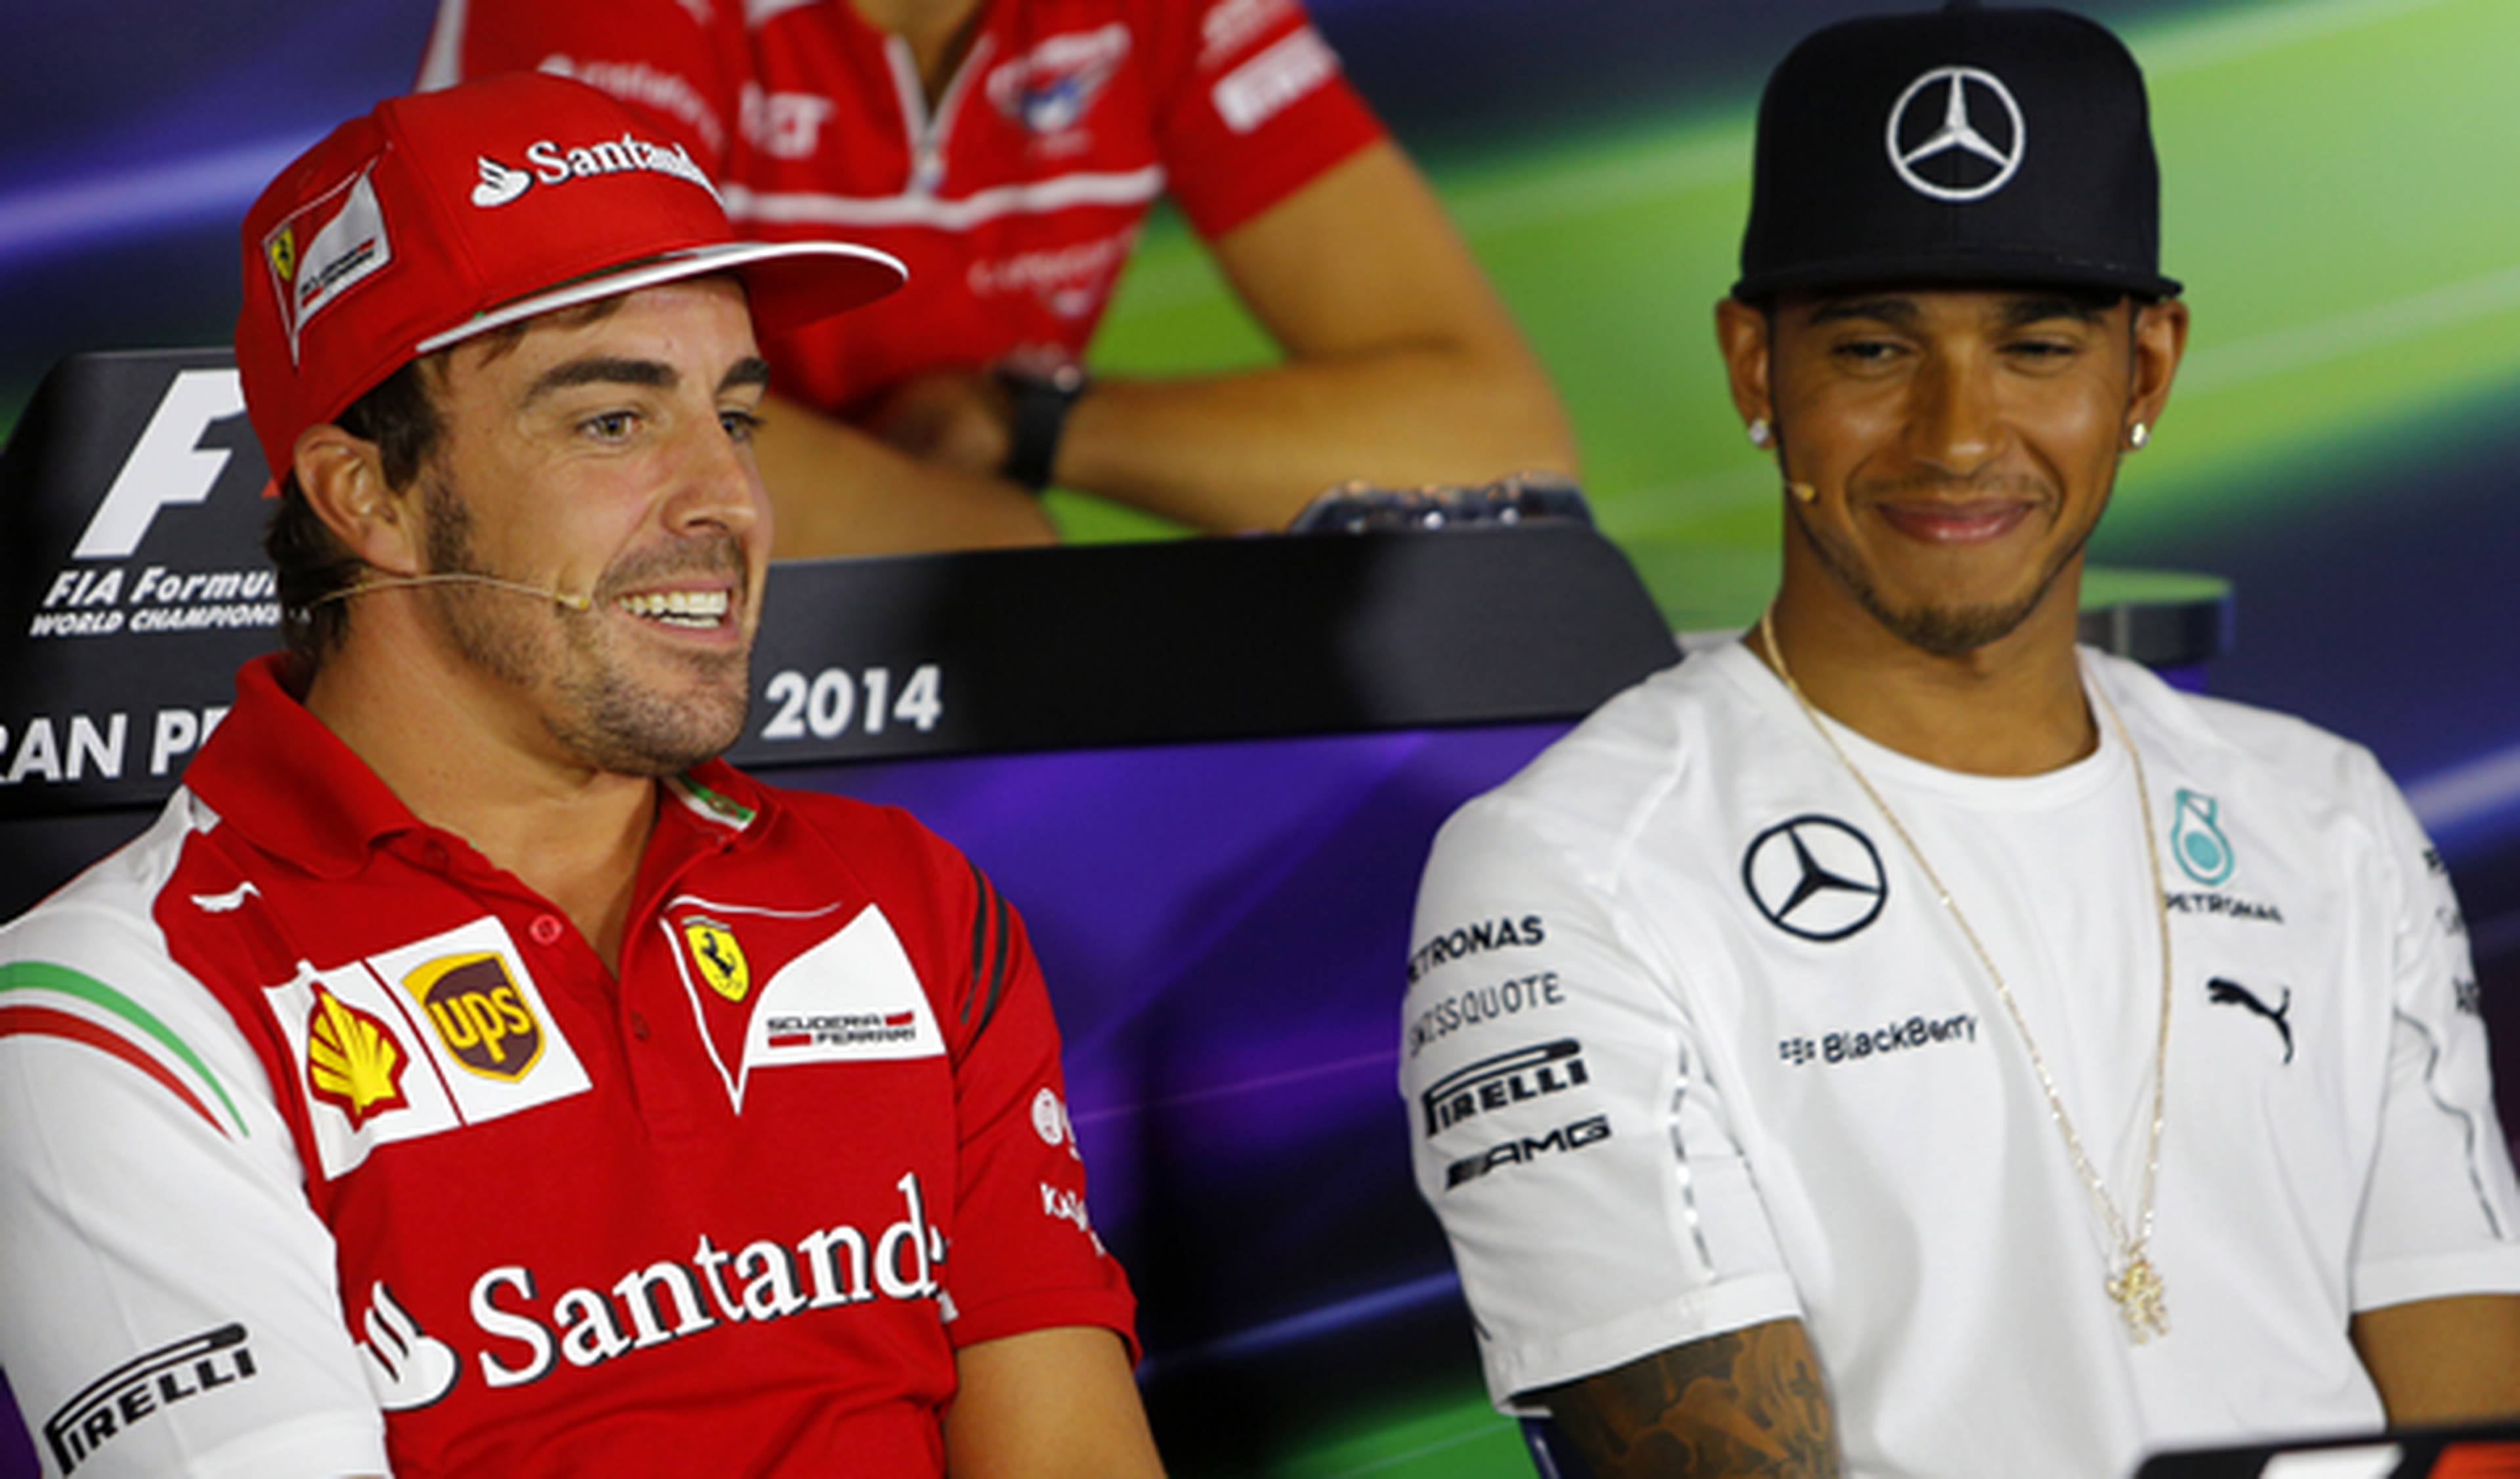 Hamilton y Alonso en rueda de prensa